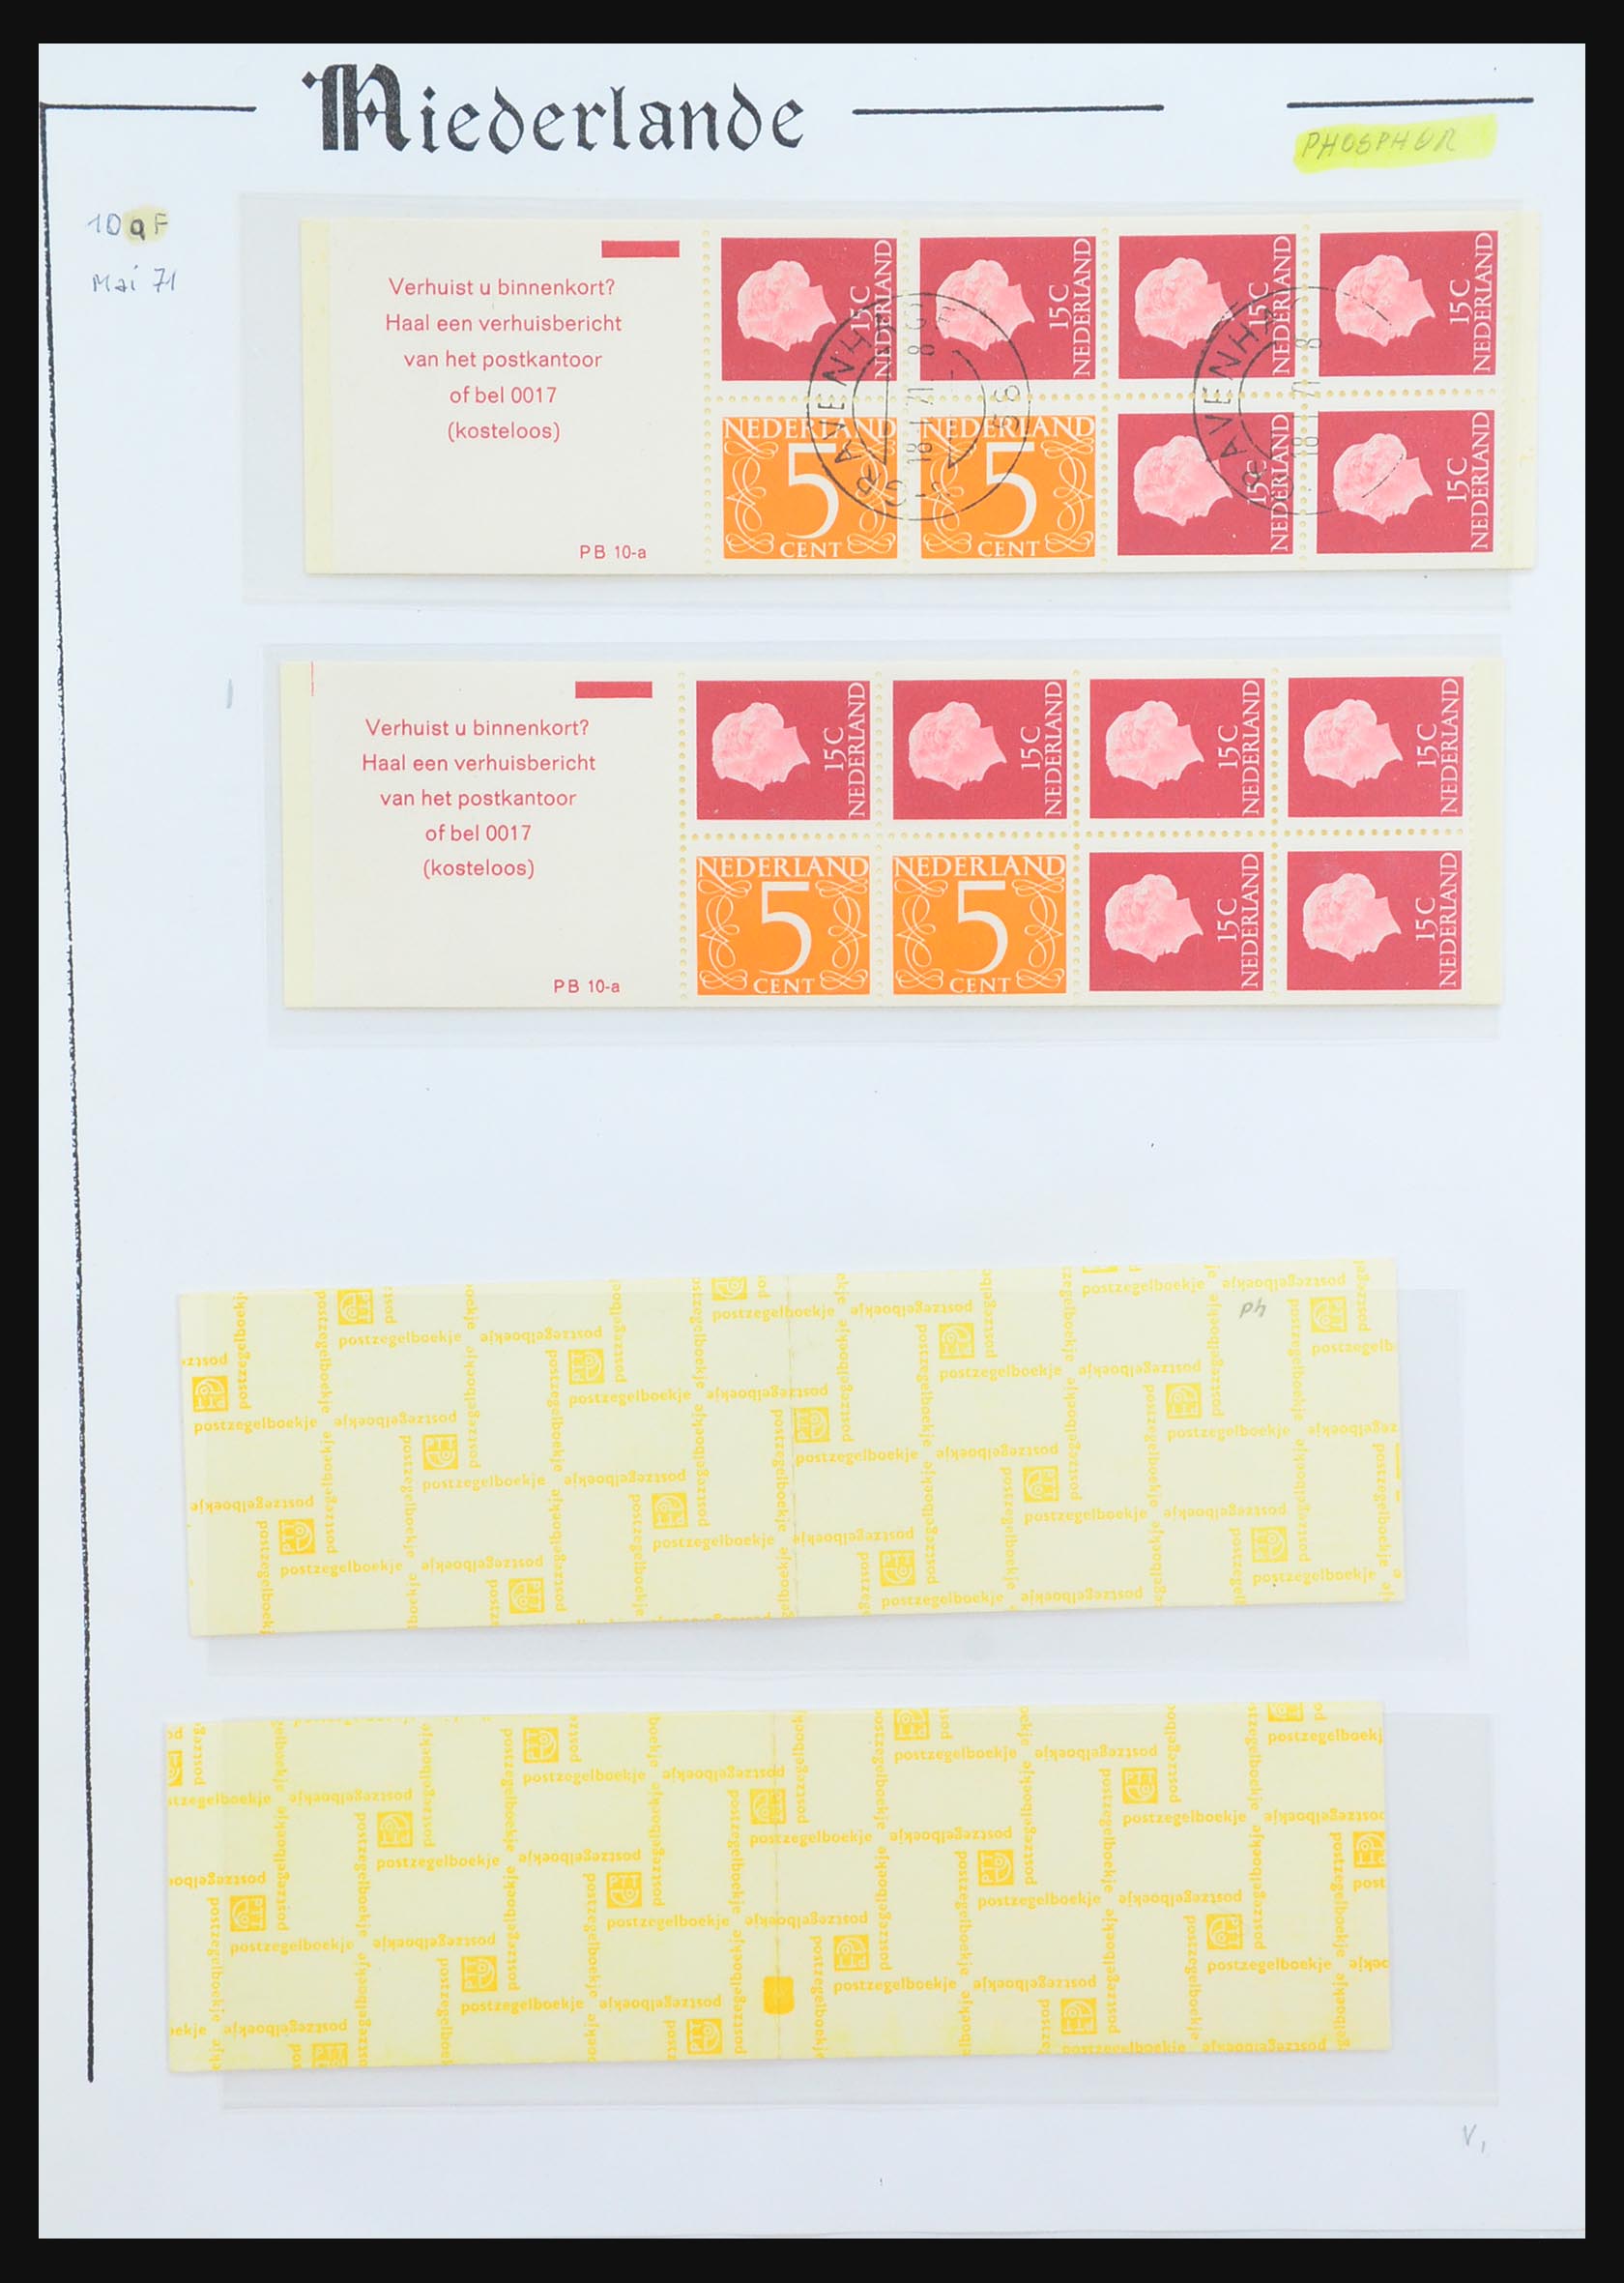 31311 043 - 31311 Netherlands stamp booklets 1964-1994.